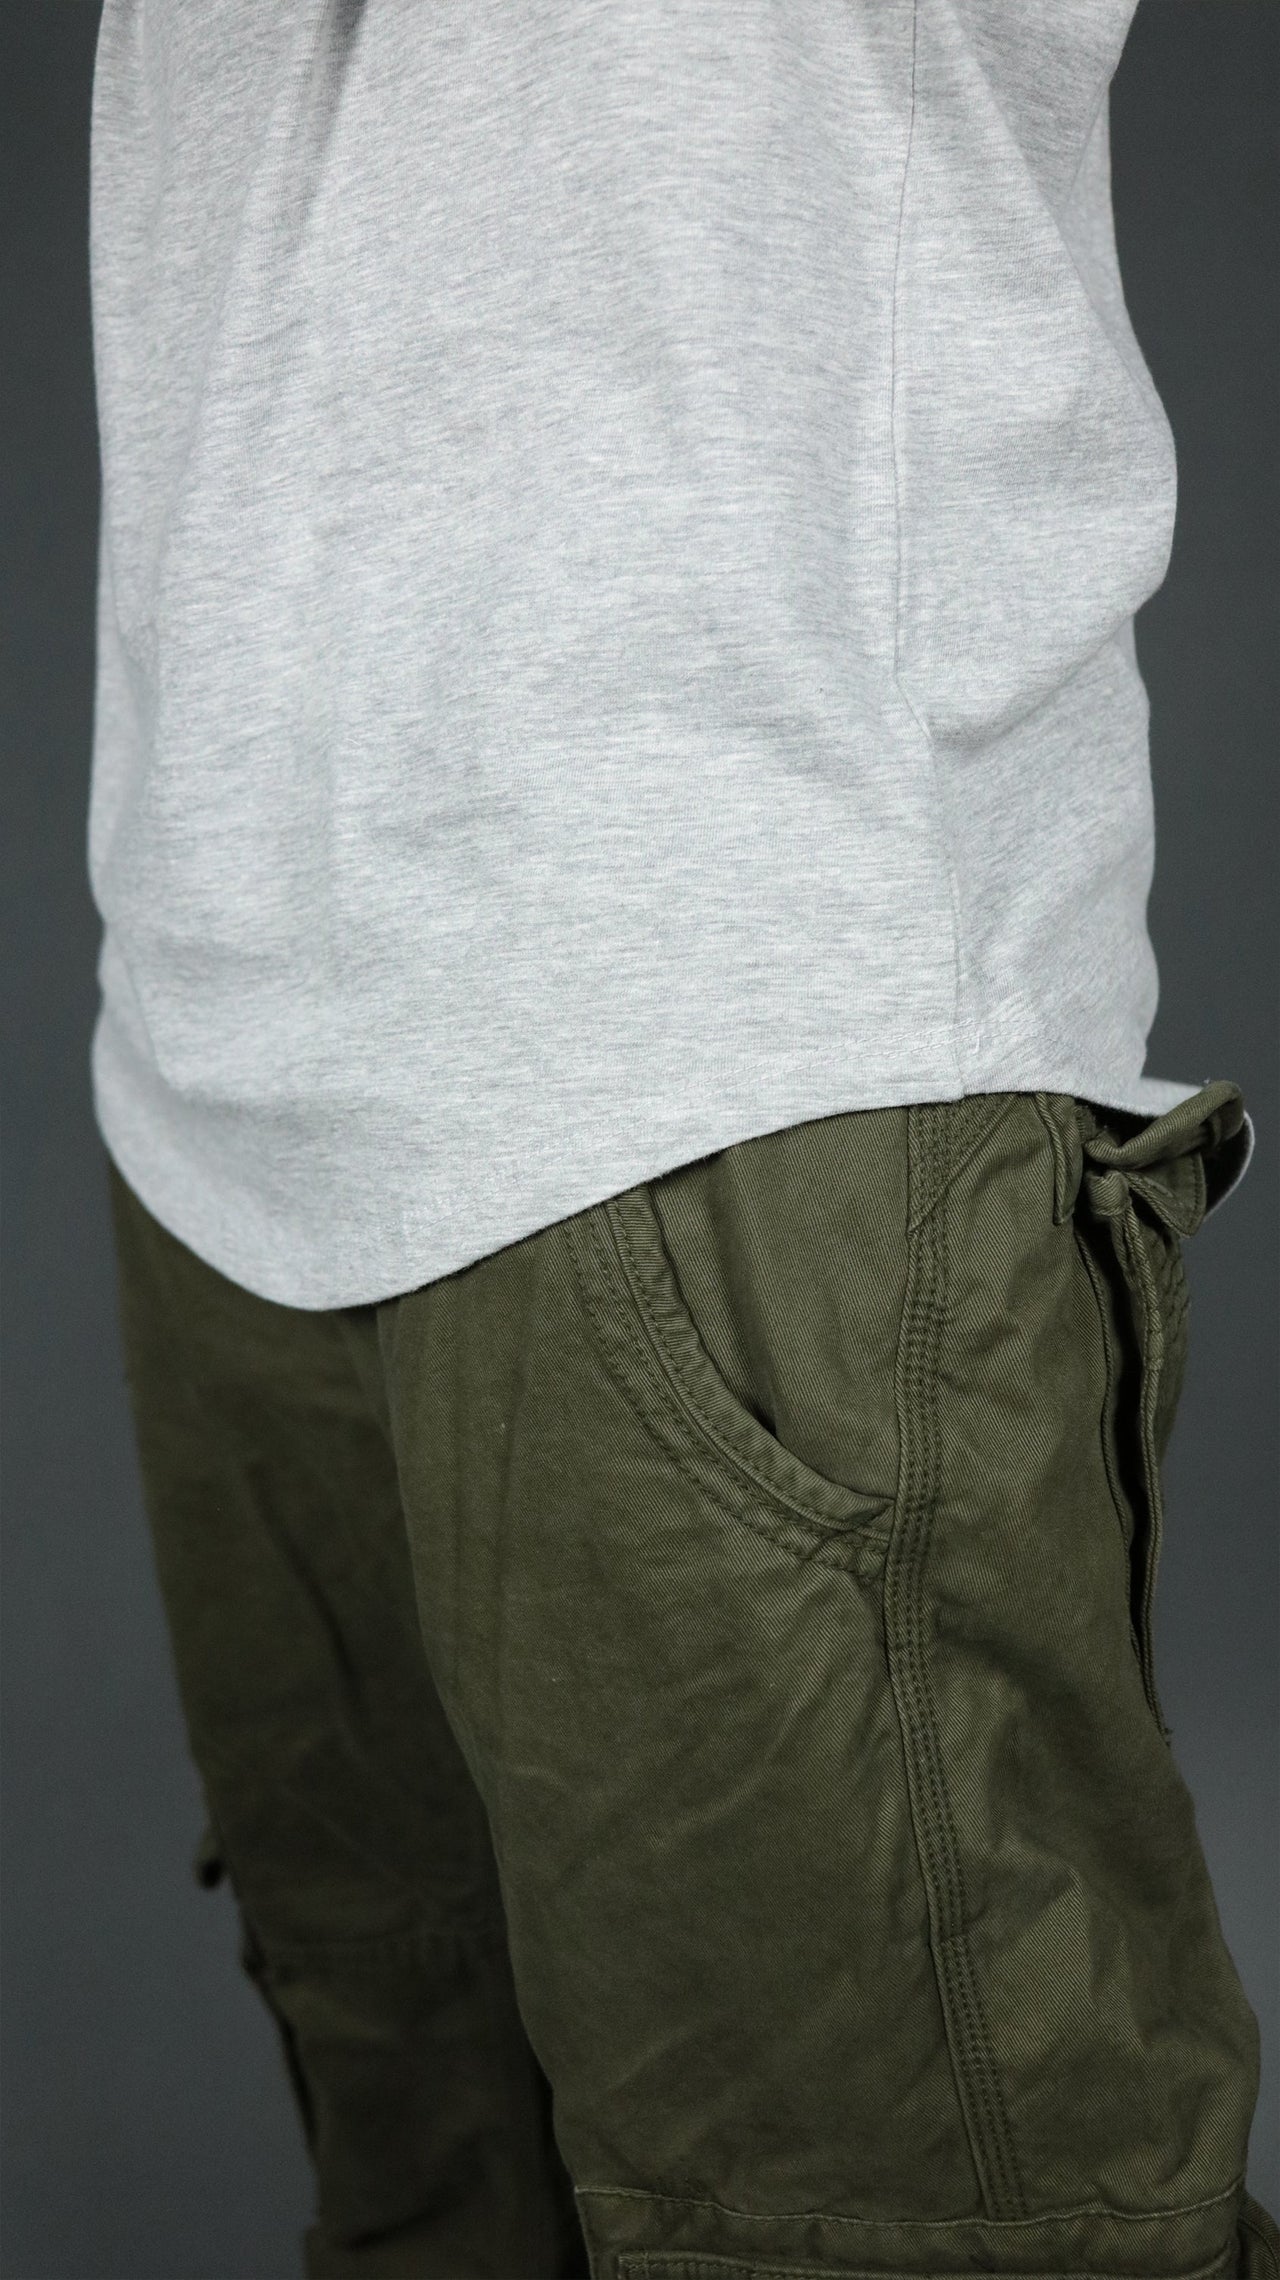 The longline hem drop cut design of the grey Jordan Craig longline shirt.